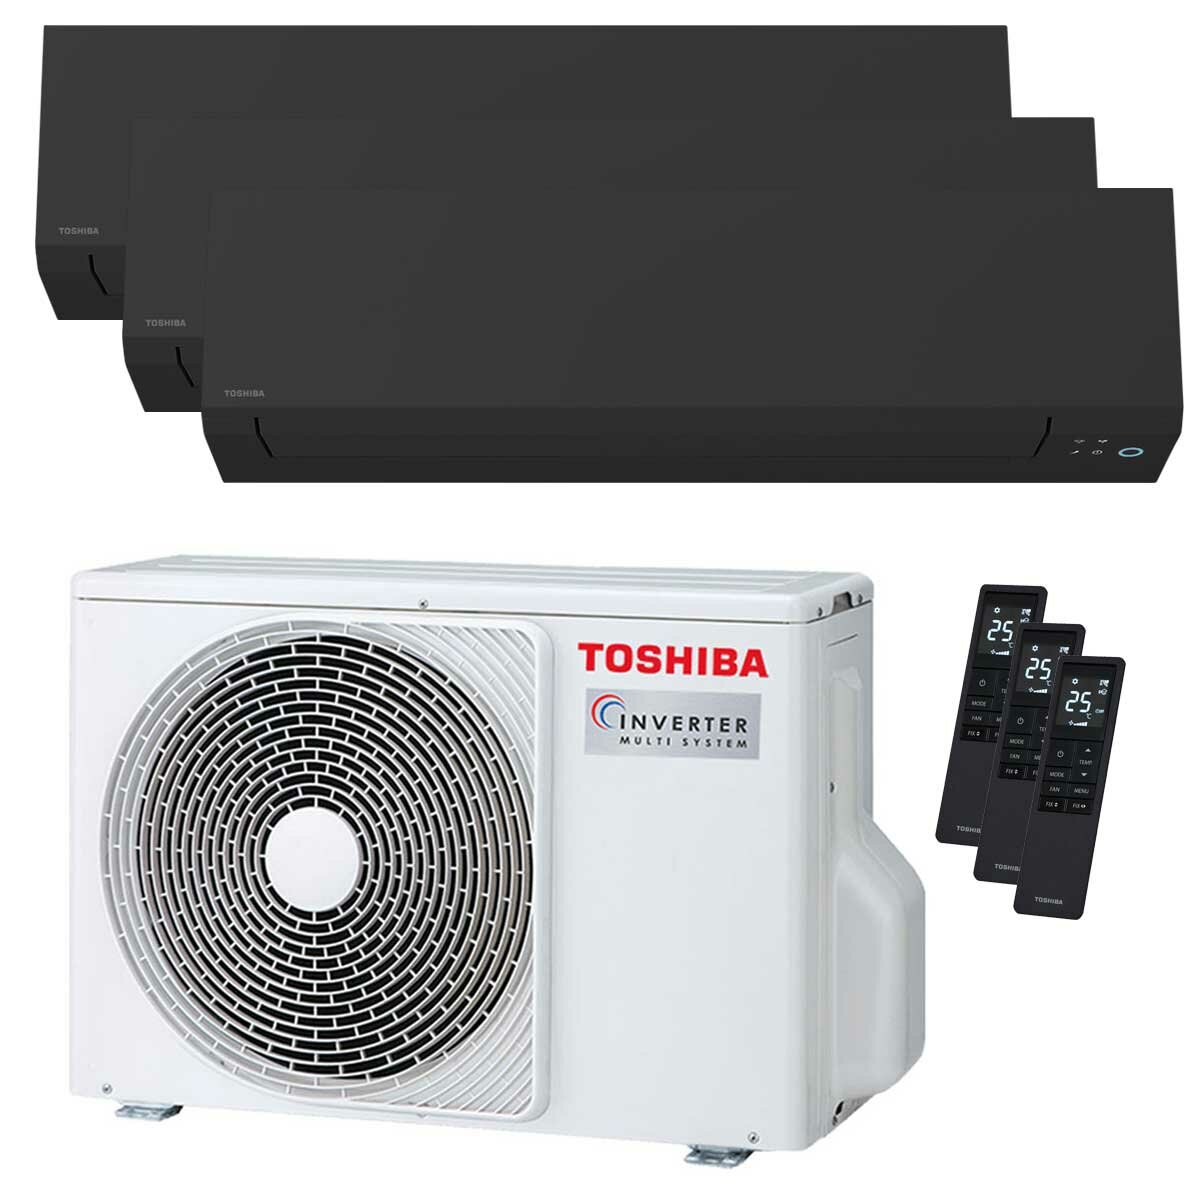 Toshiba SHORAI Edge Black climatiseur trial split 7000+9000+16000 BTU inverseur A+++ unité extérieure wifi 5,2 kW 